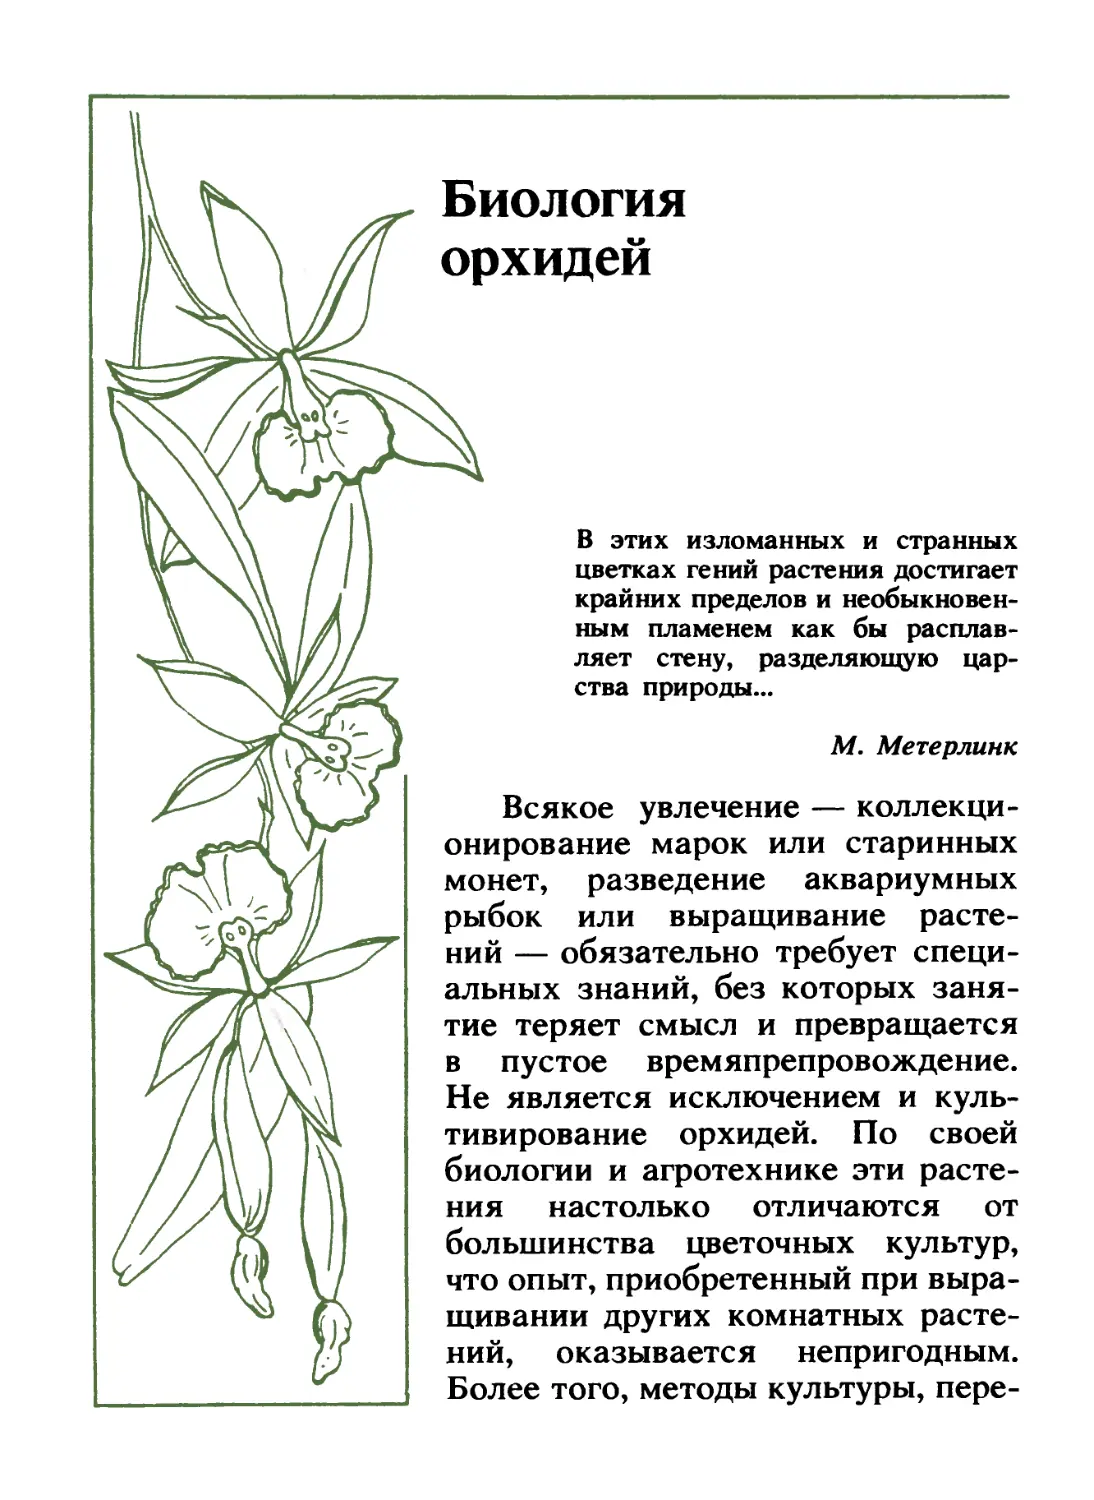 Биология орхидей